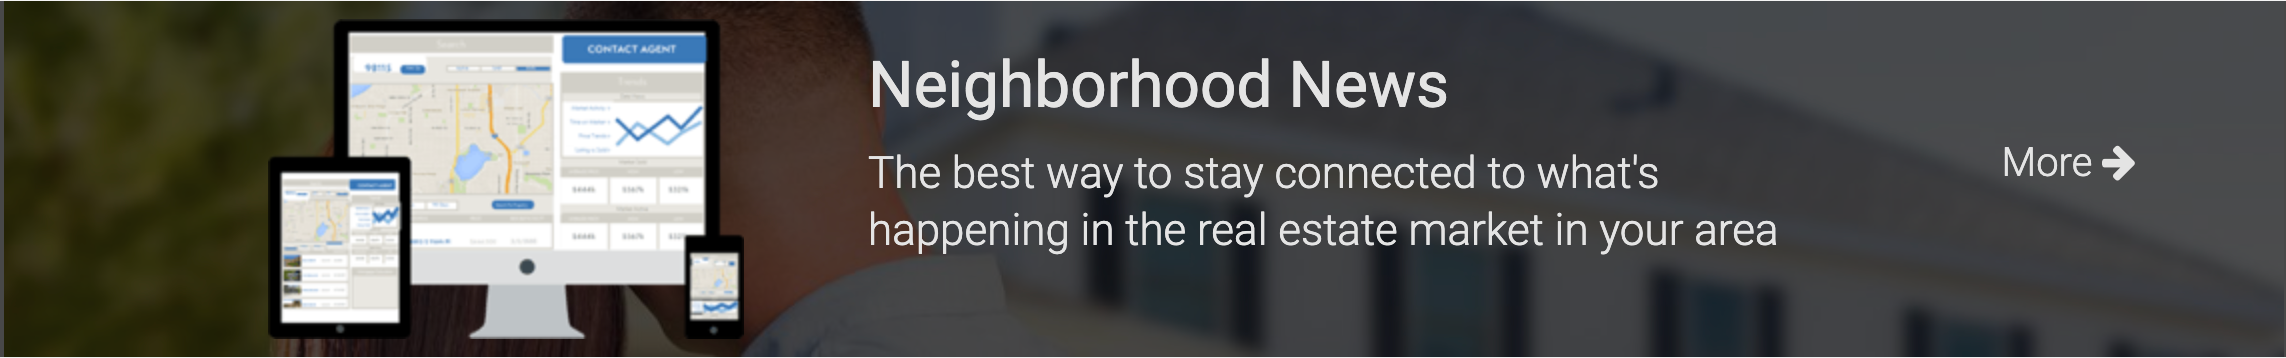 Neighbourhood News